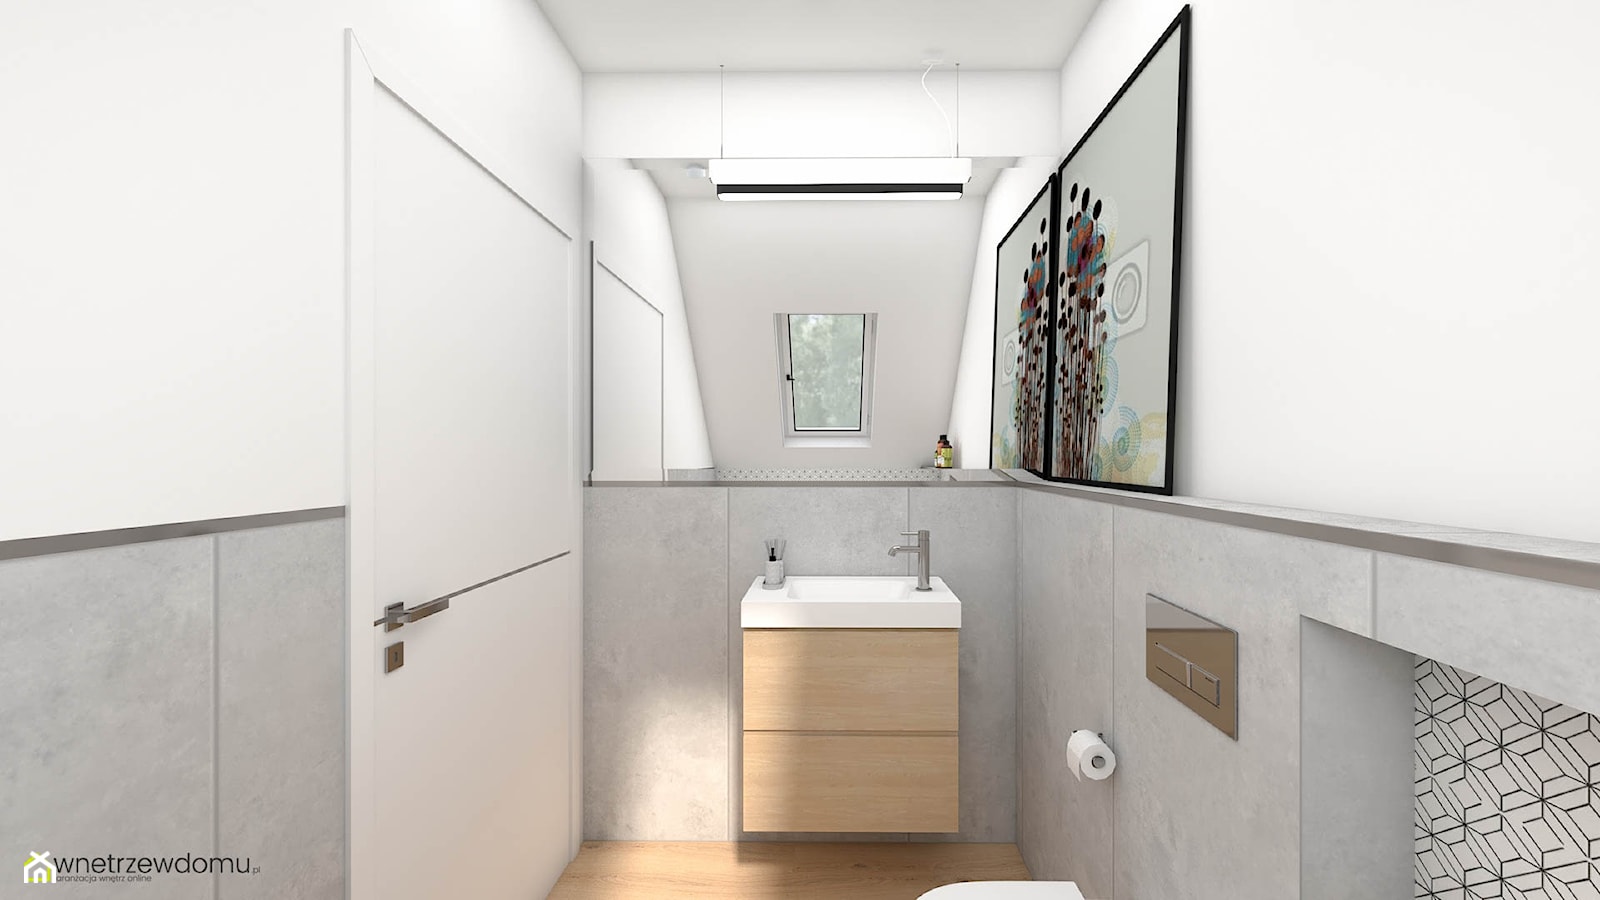 Mała łazienka na poddaszu - zdjęcie od wnetrzewdomu - Homebook